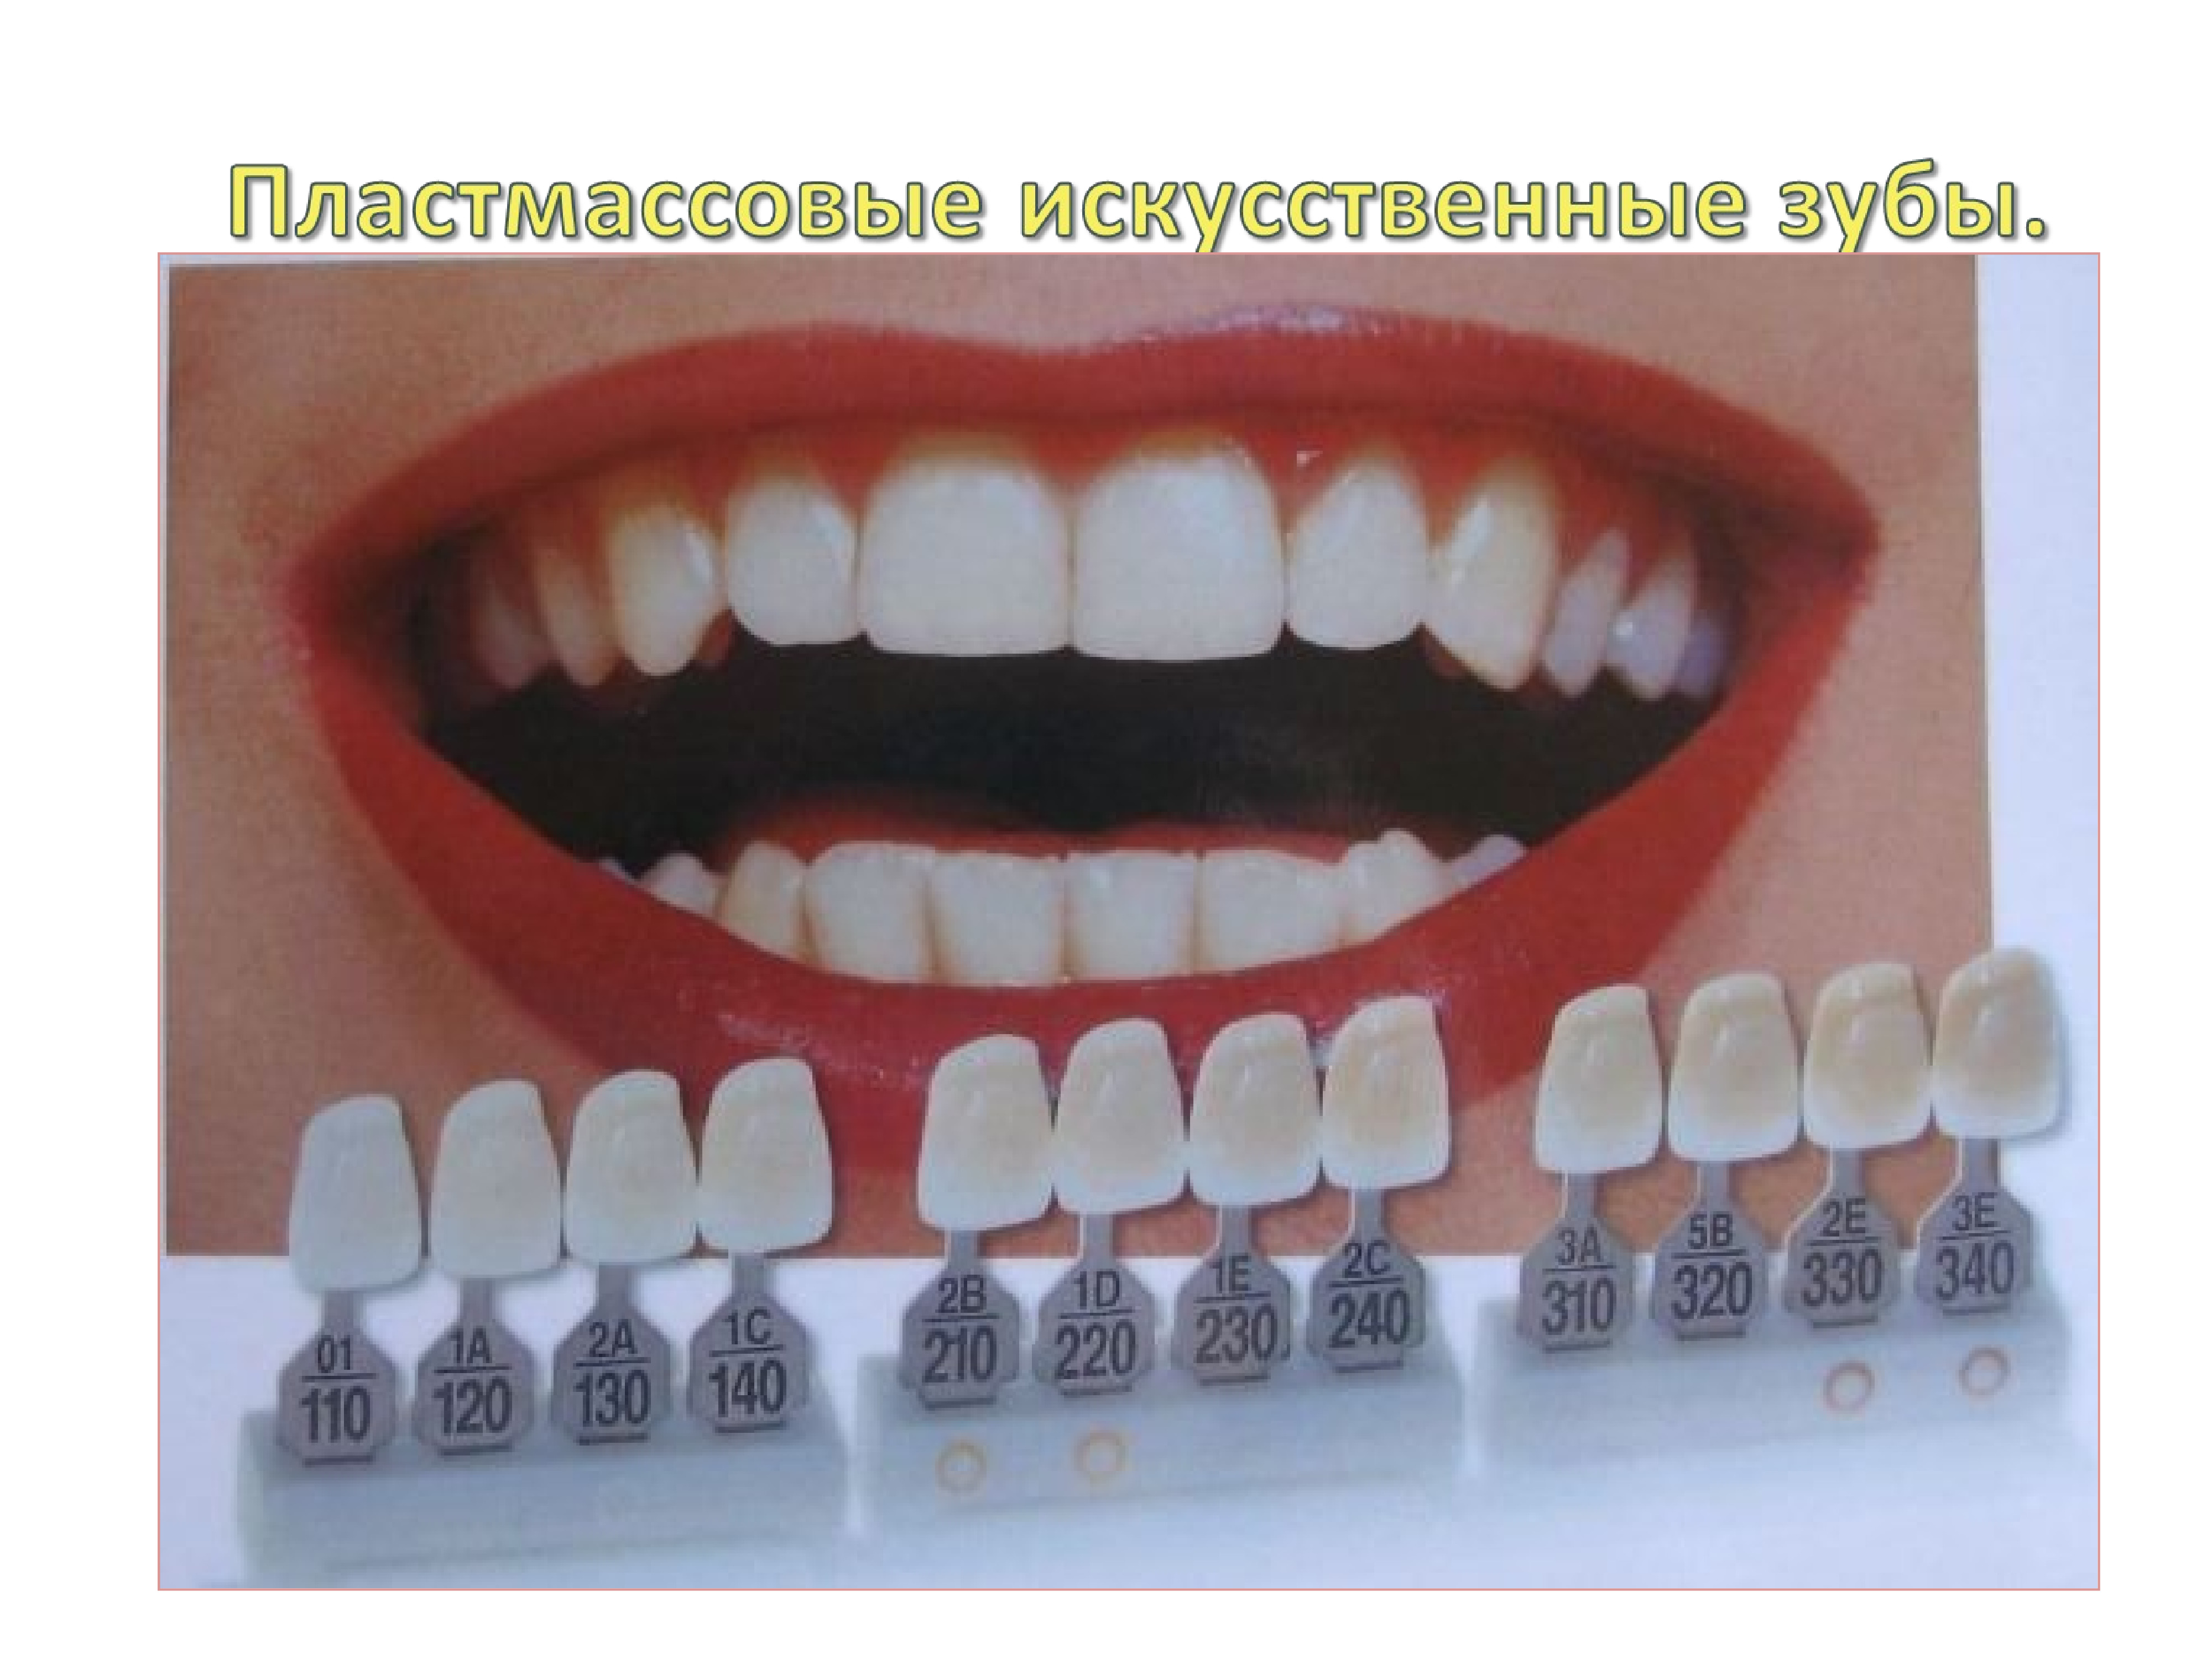 цвет зубов а3 фото керамики у зубов